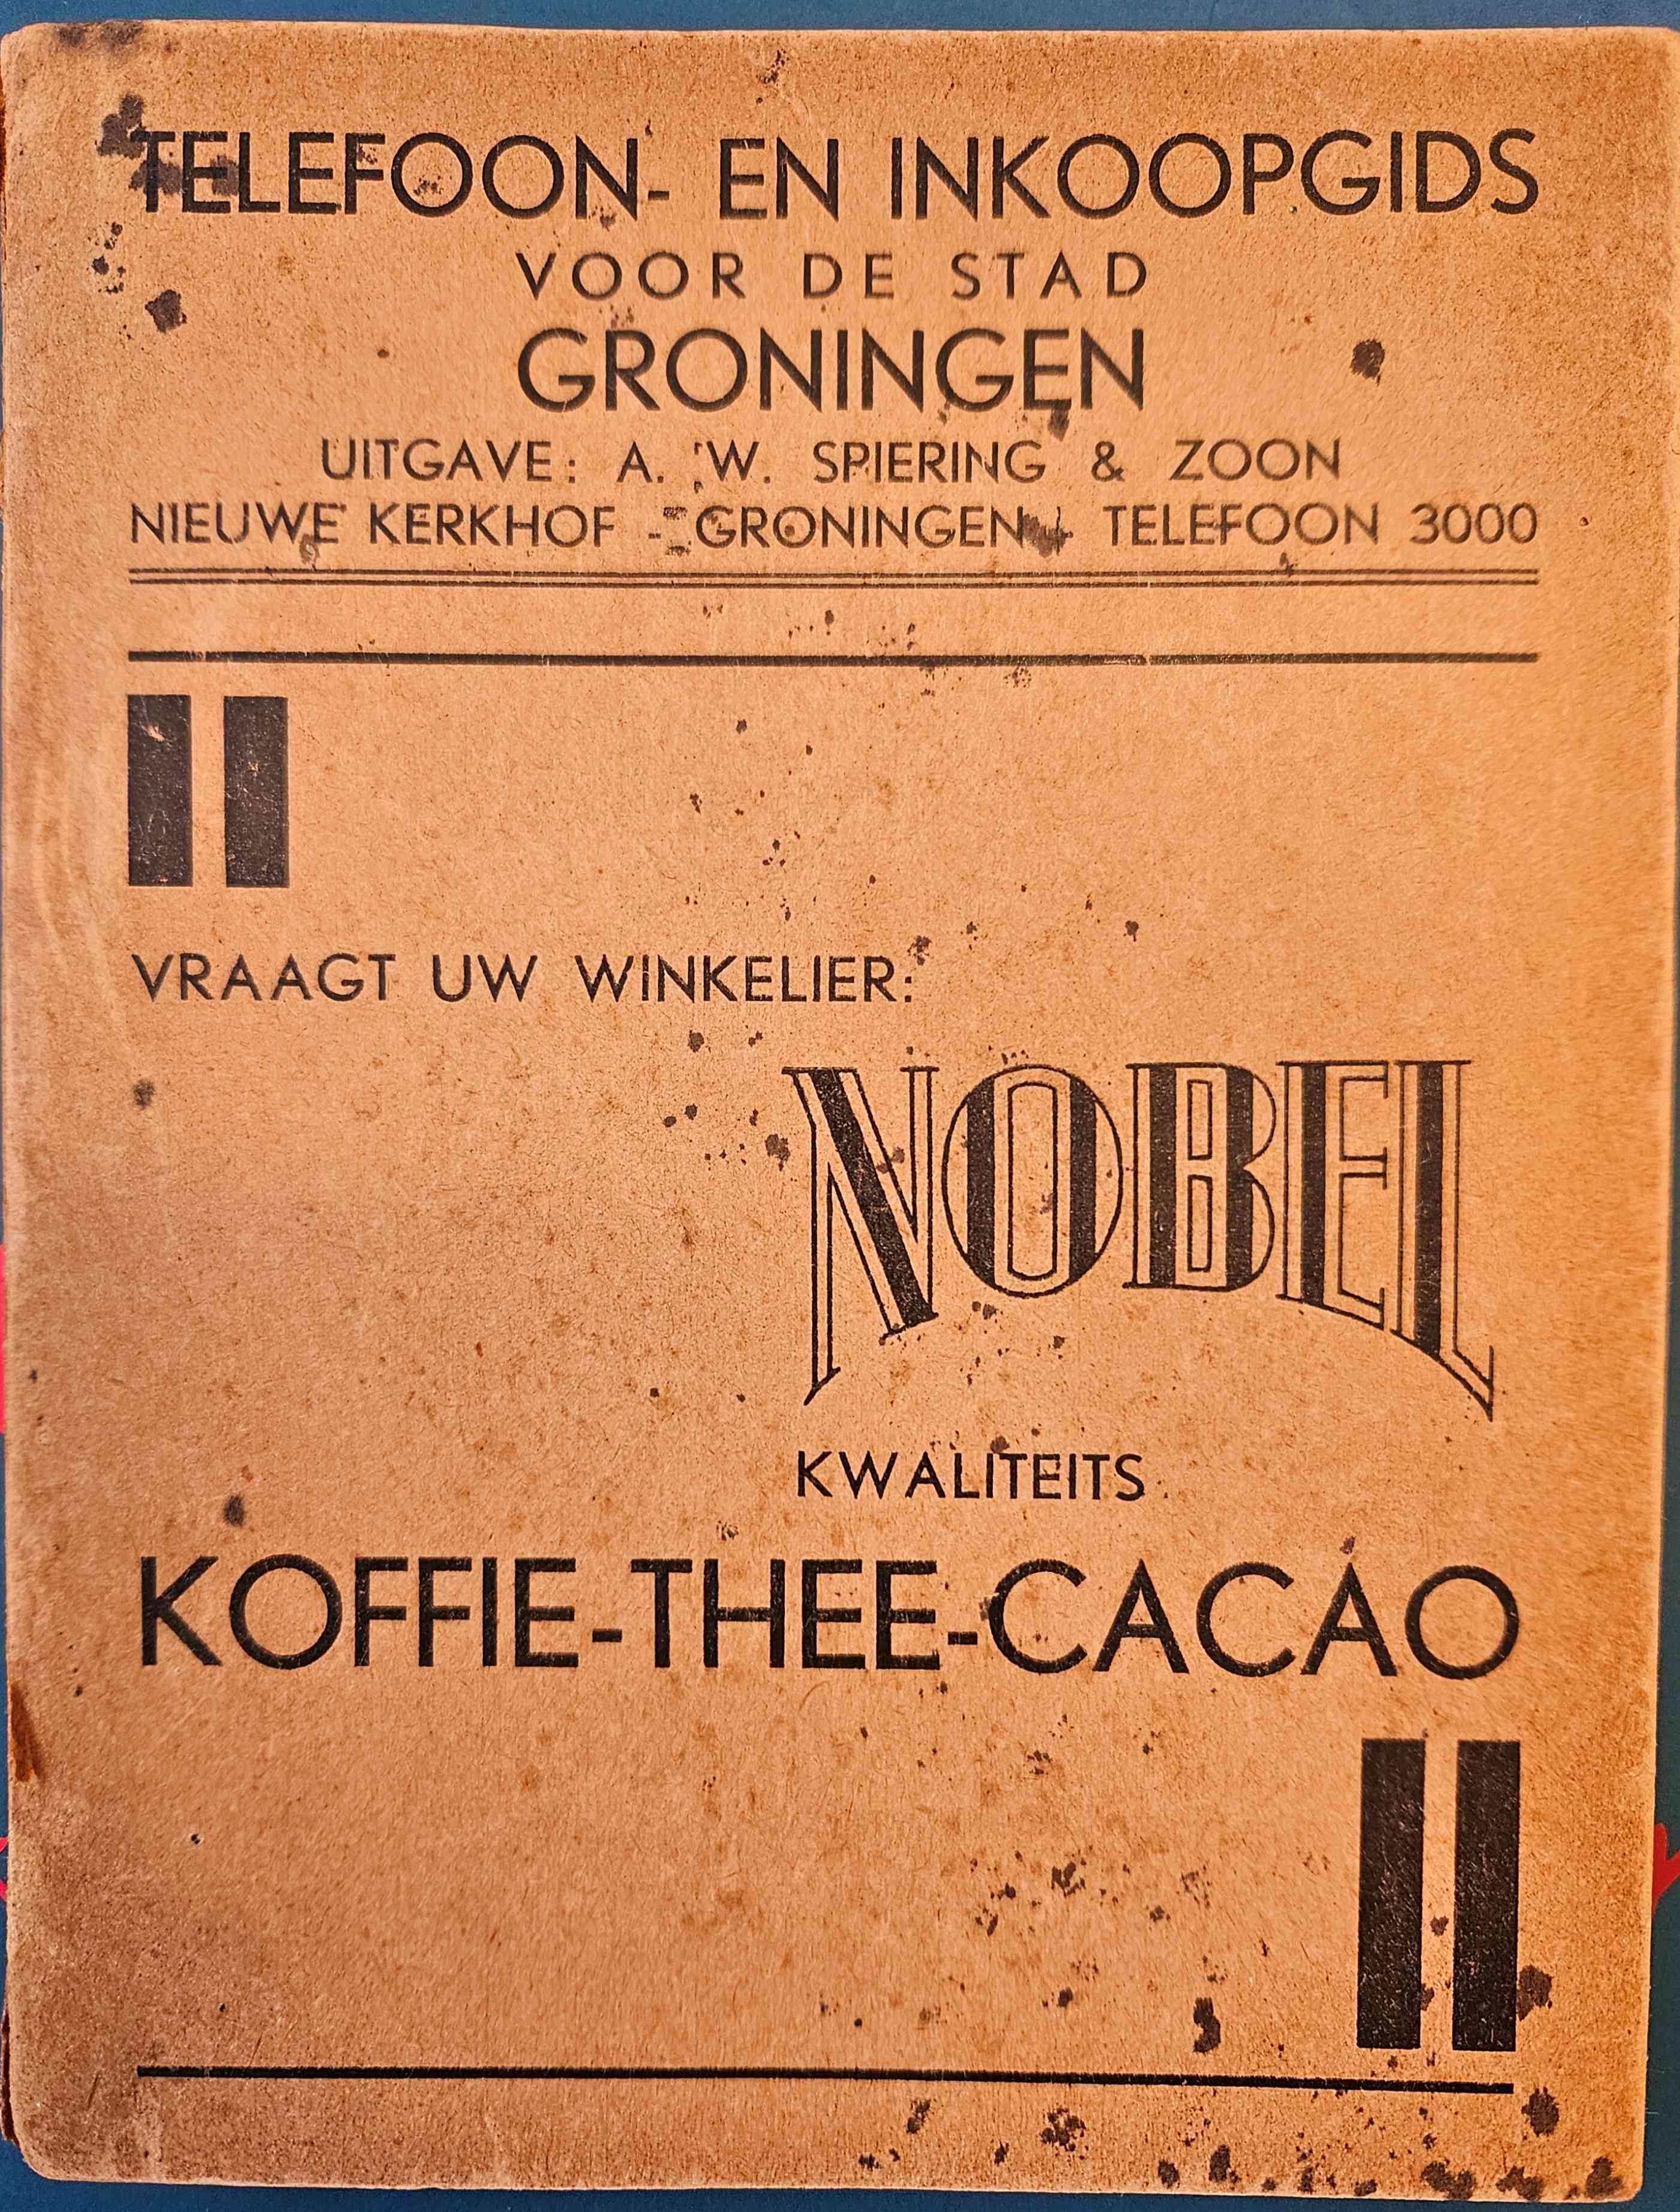  - Telefoon- en inkoopgids voor de stad Groningen. 'Vraagt uw winkelier: Nobel kwaliteits koffie thee cacao'.